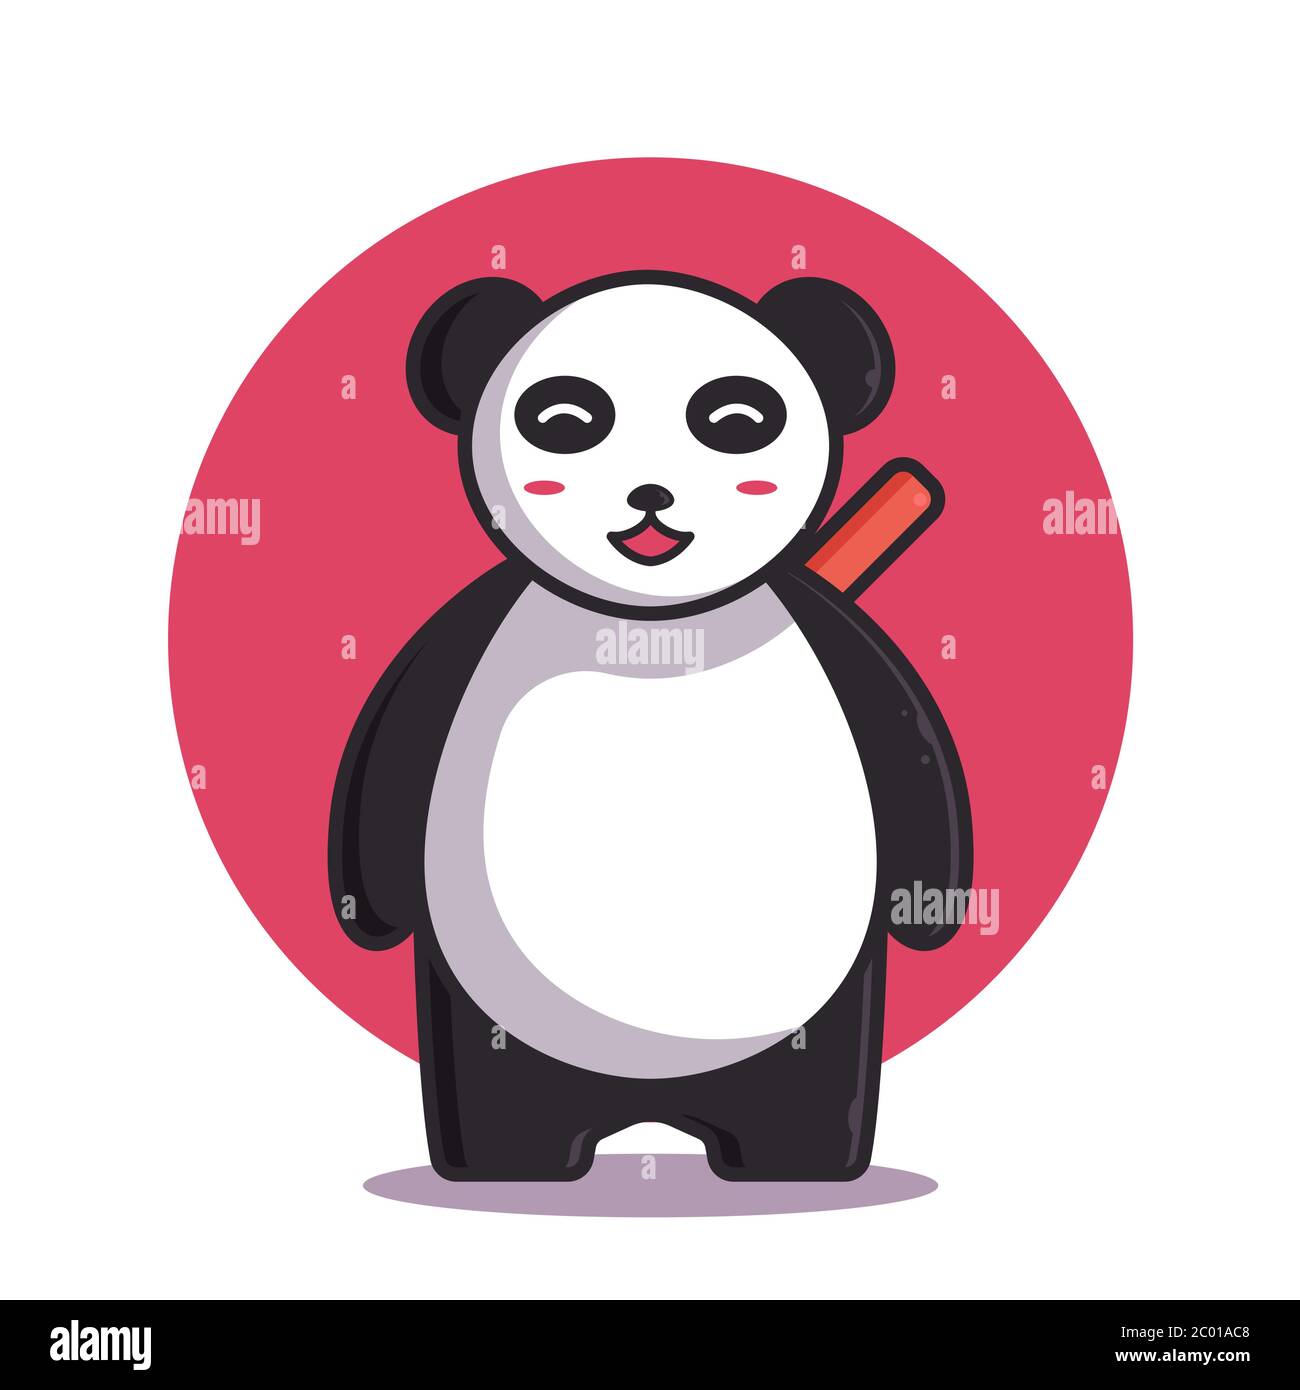 Cute Panda Vector Illustration. Ninja Panda Logo. Flat Cartoon Style Stock Vector